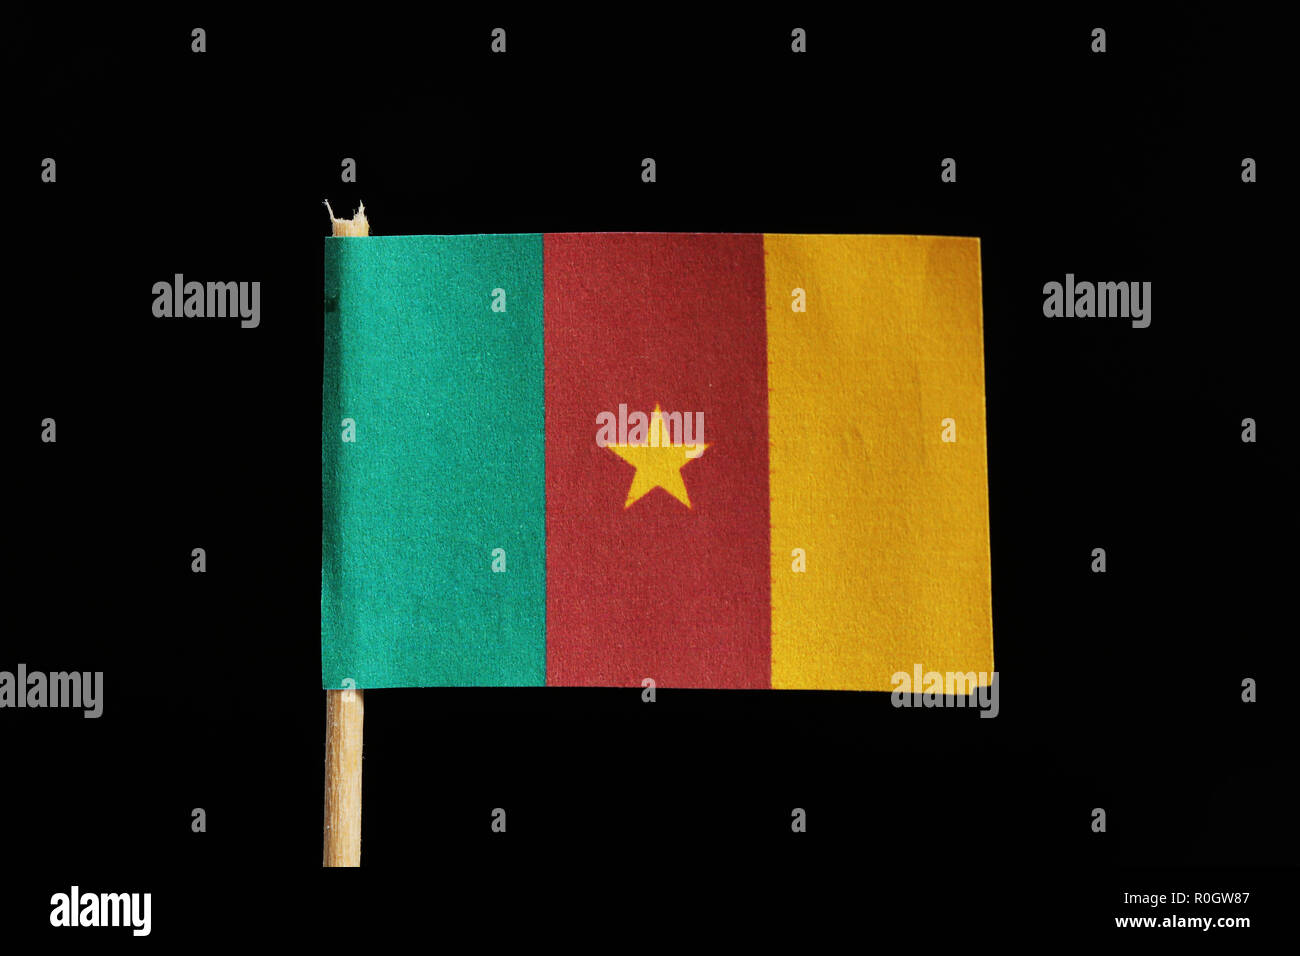 Un drapeau original et officiel du Cameroun le cure-dent sur fond noir. C'est une verticale de 3 couleurs vert, rouge et jaune avec une étoile à cinq branches Banque D'Images